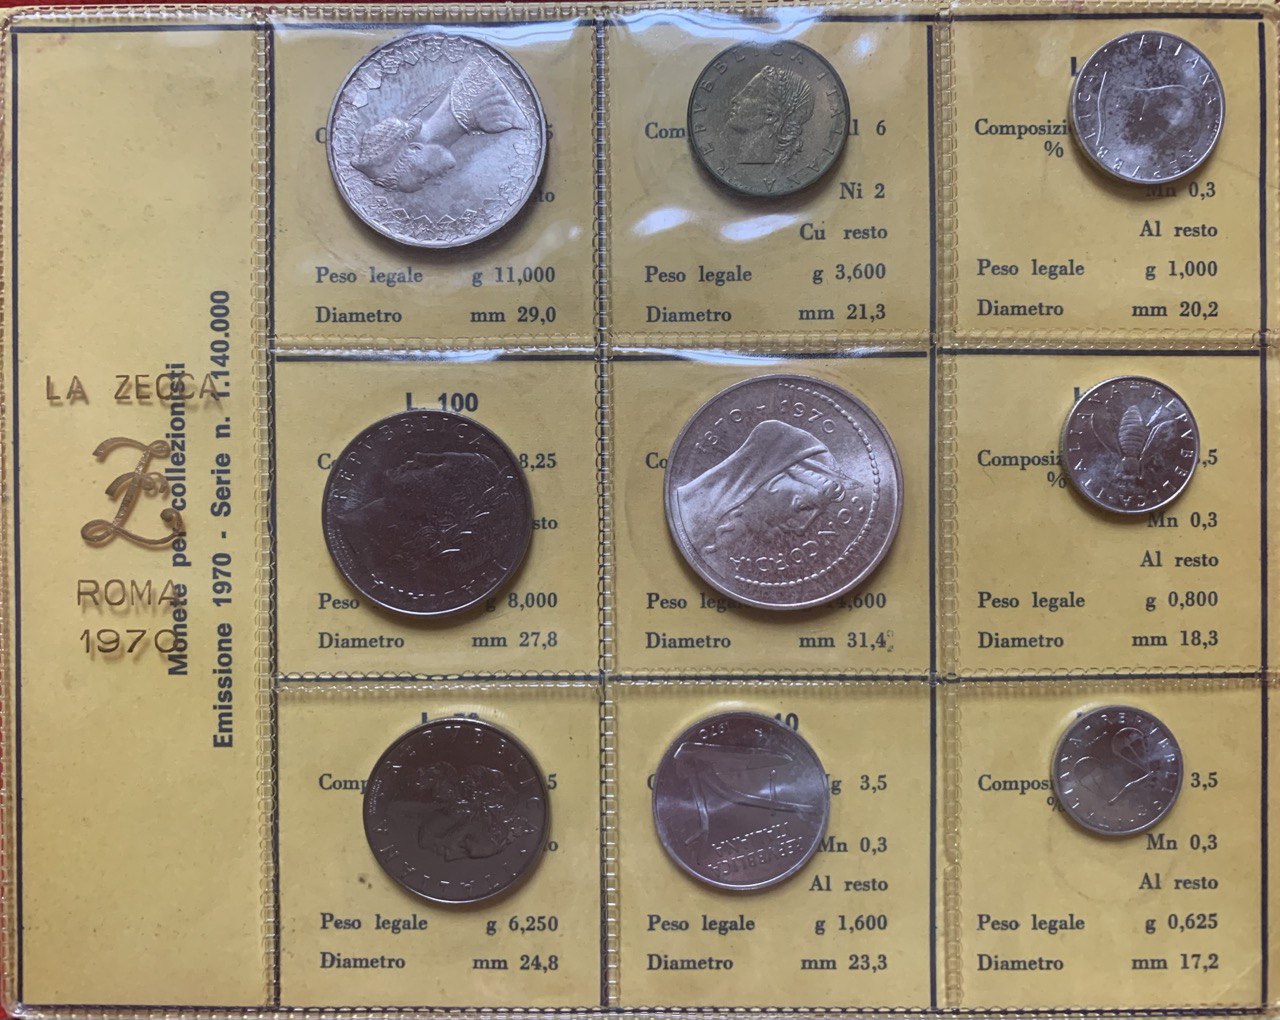  Italy 1970 Coin set BU (9 coins)   